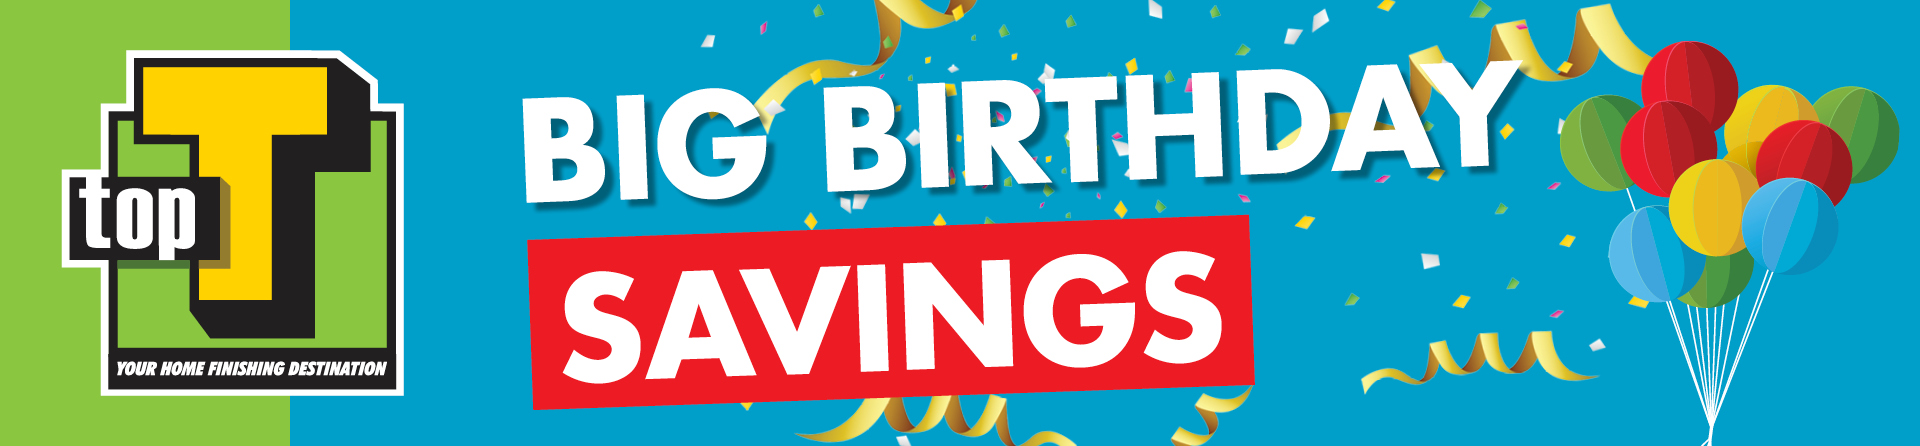 birthday_savings